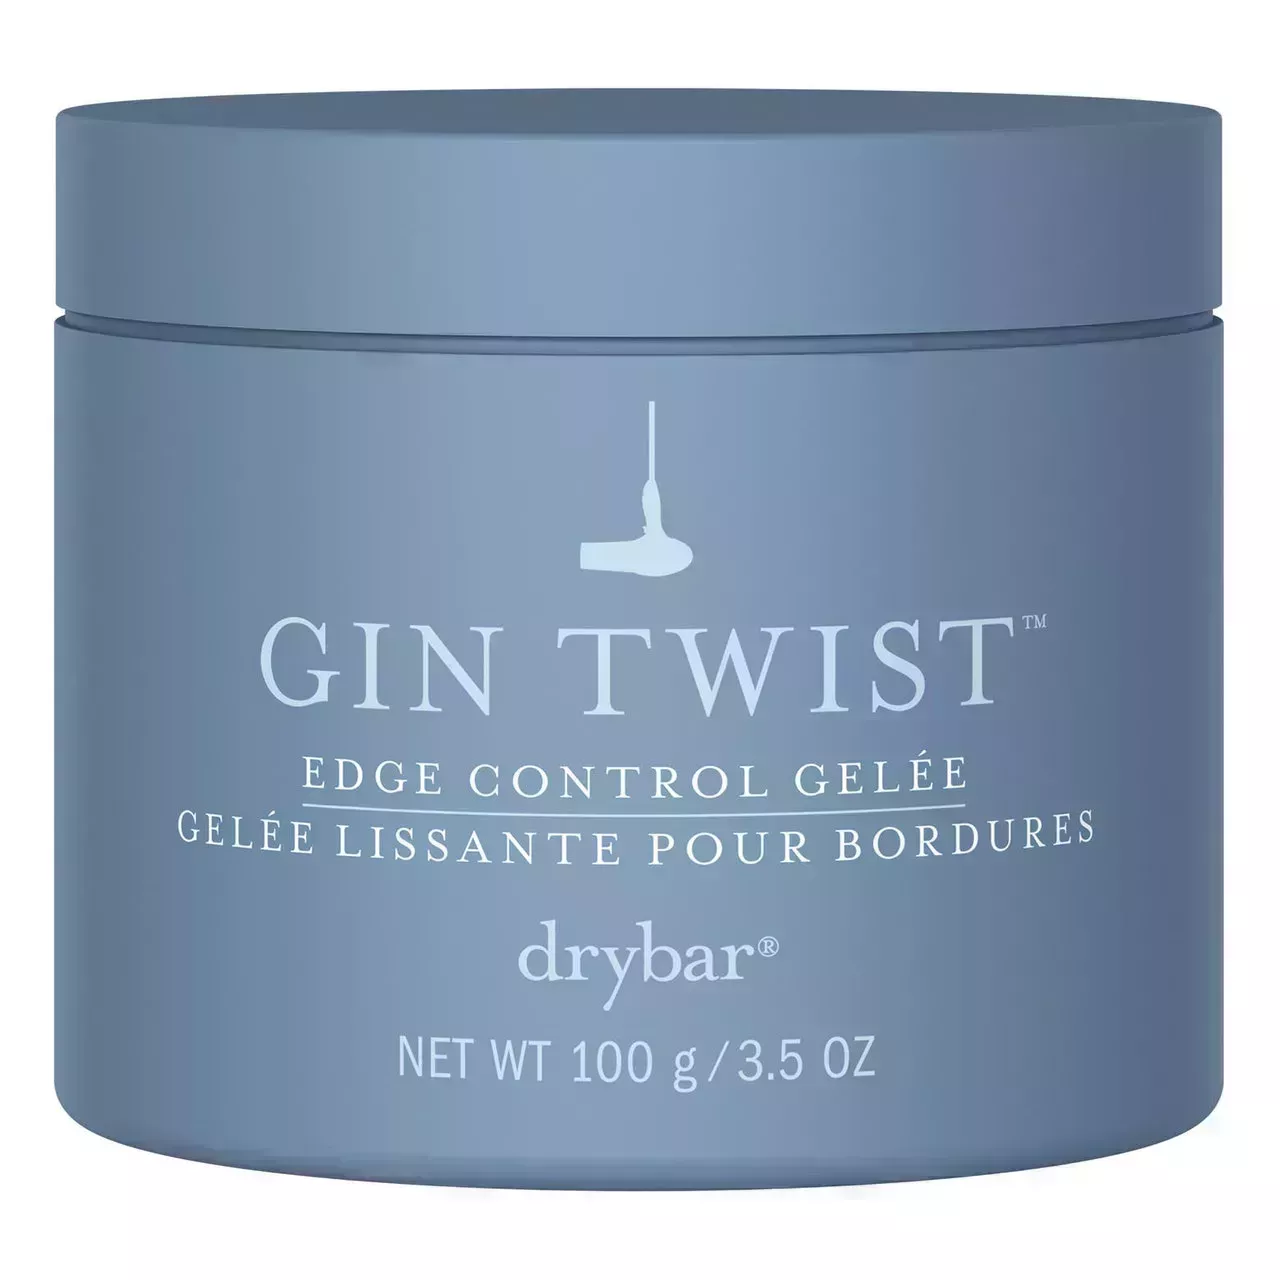 grey-blue jar of drybar gin twist edge control on a white background